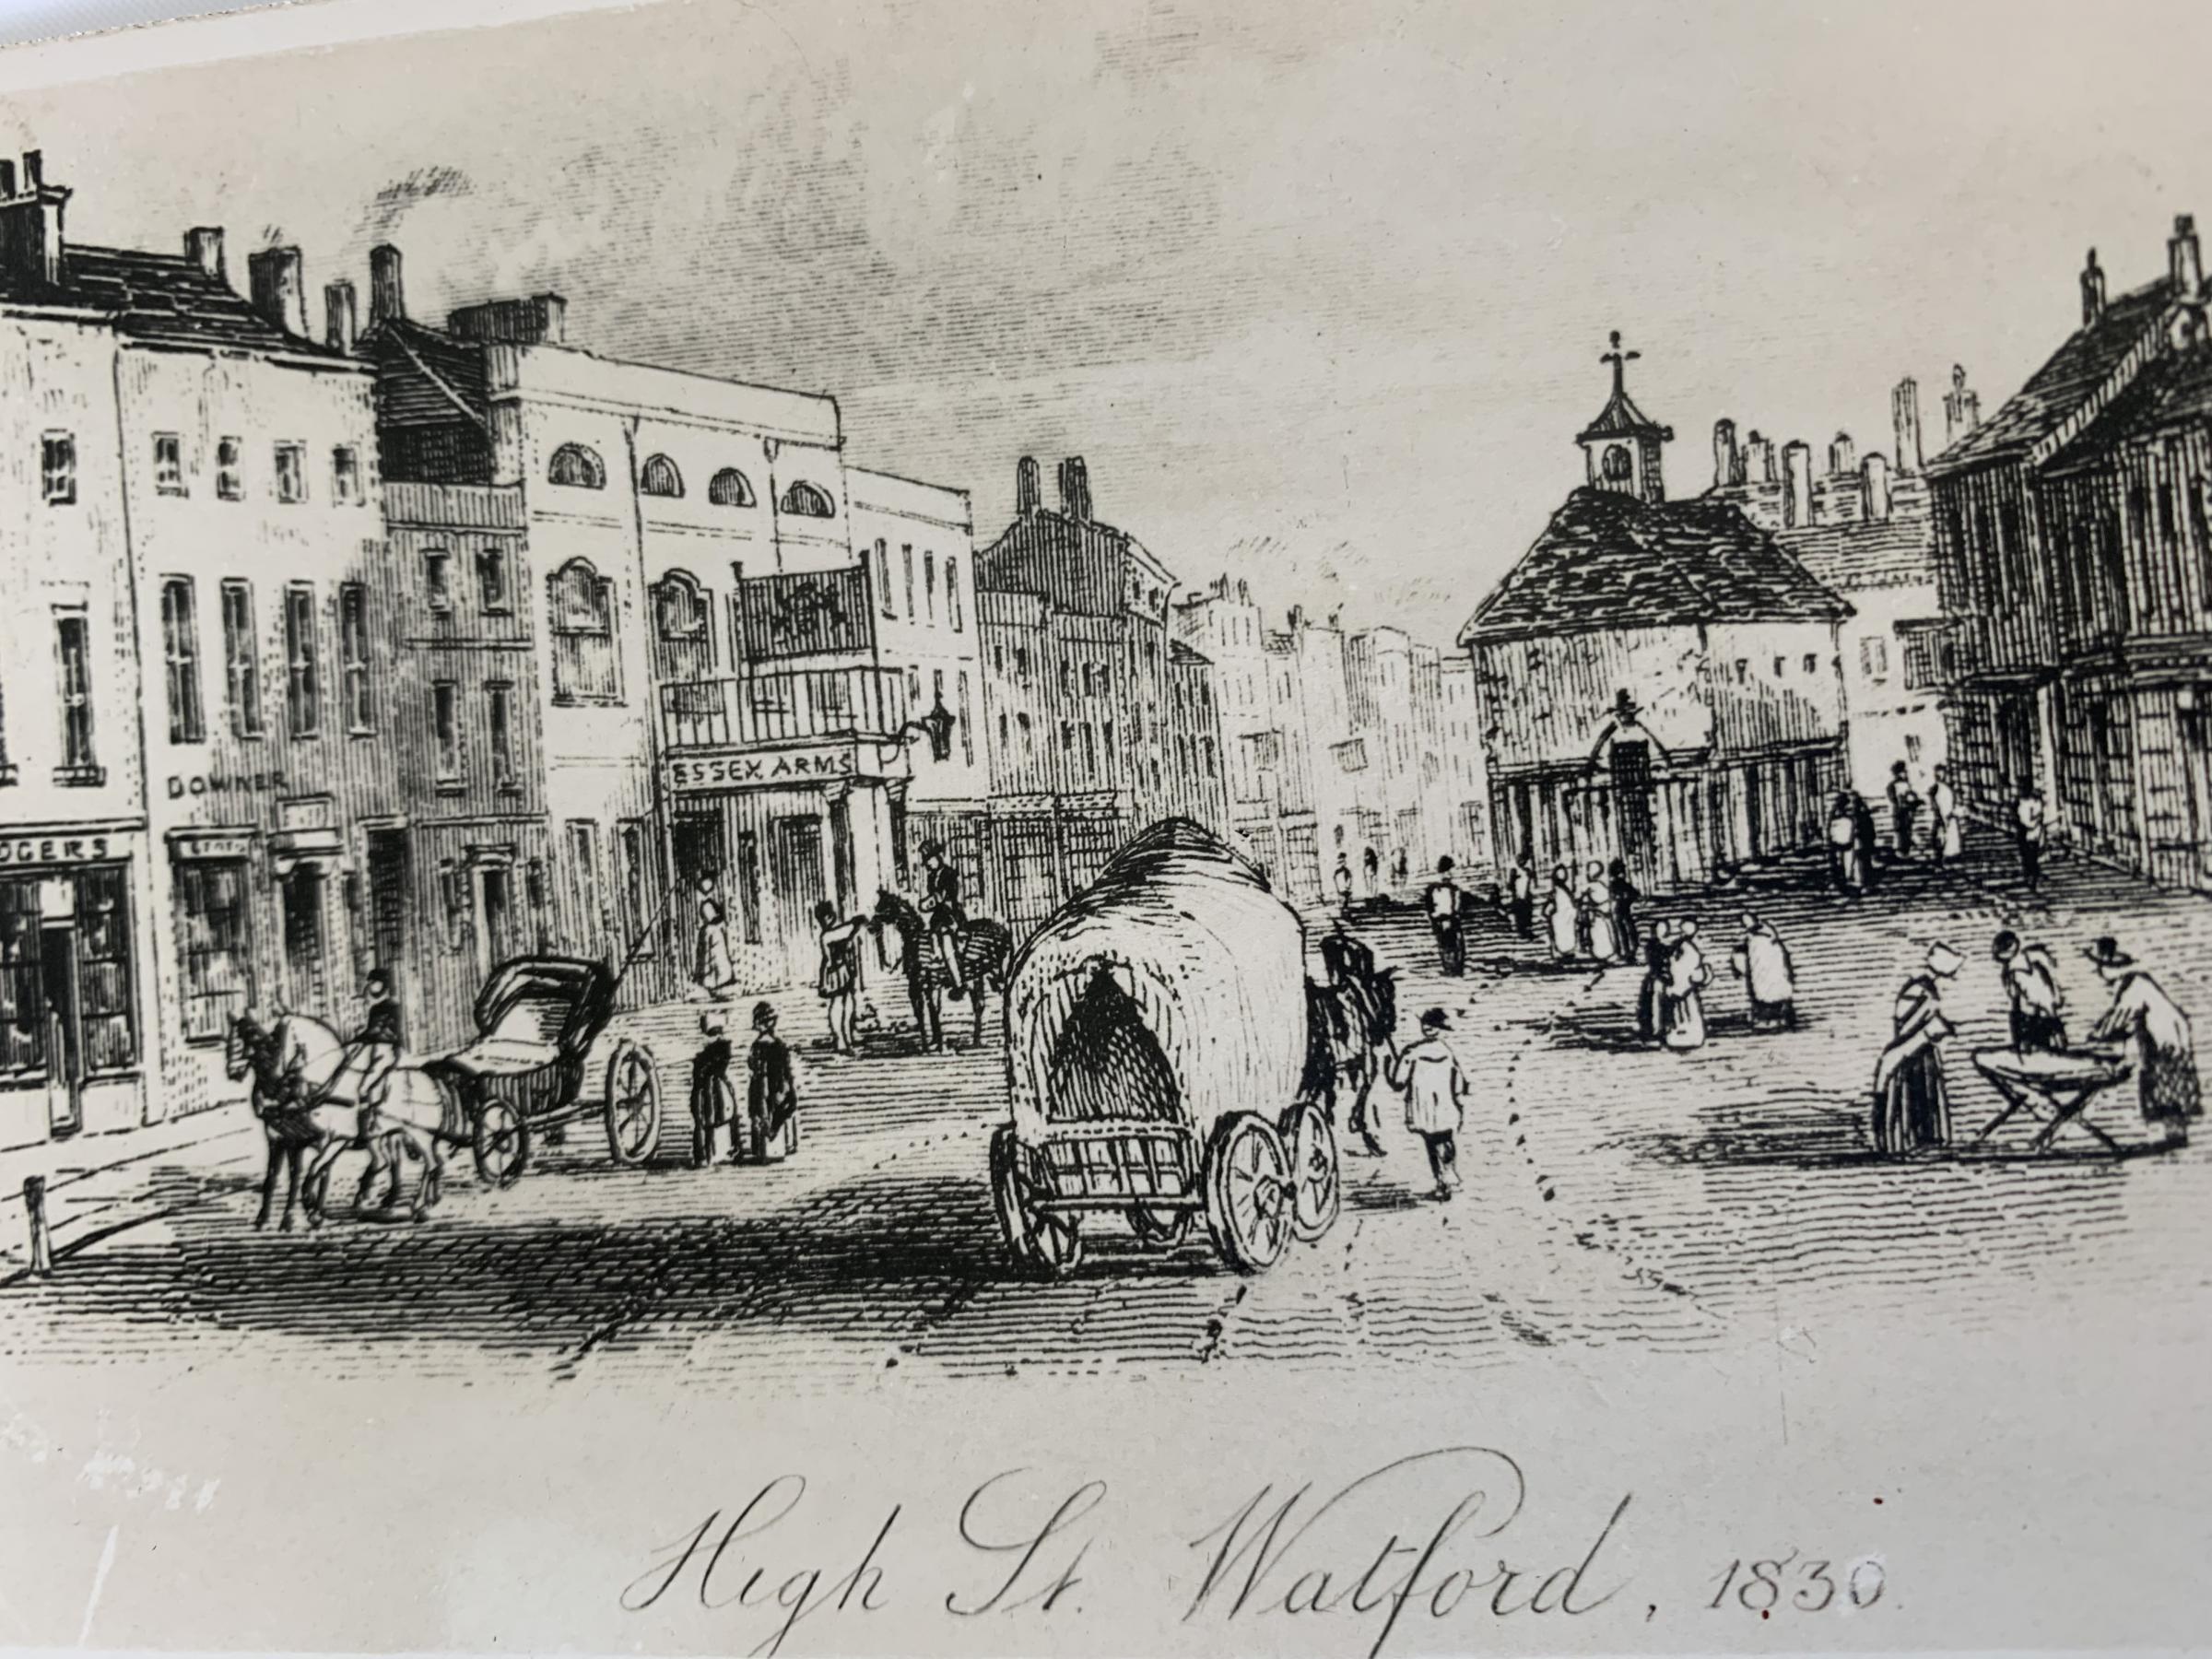 Market Place 1830